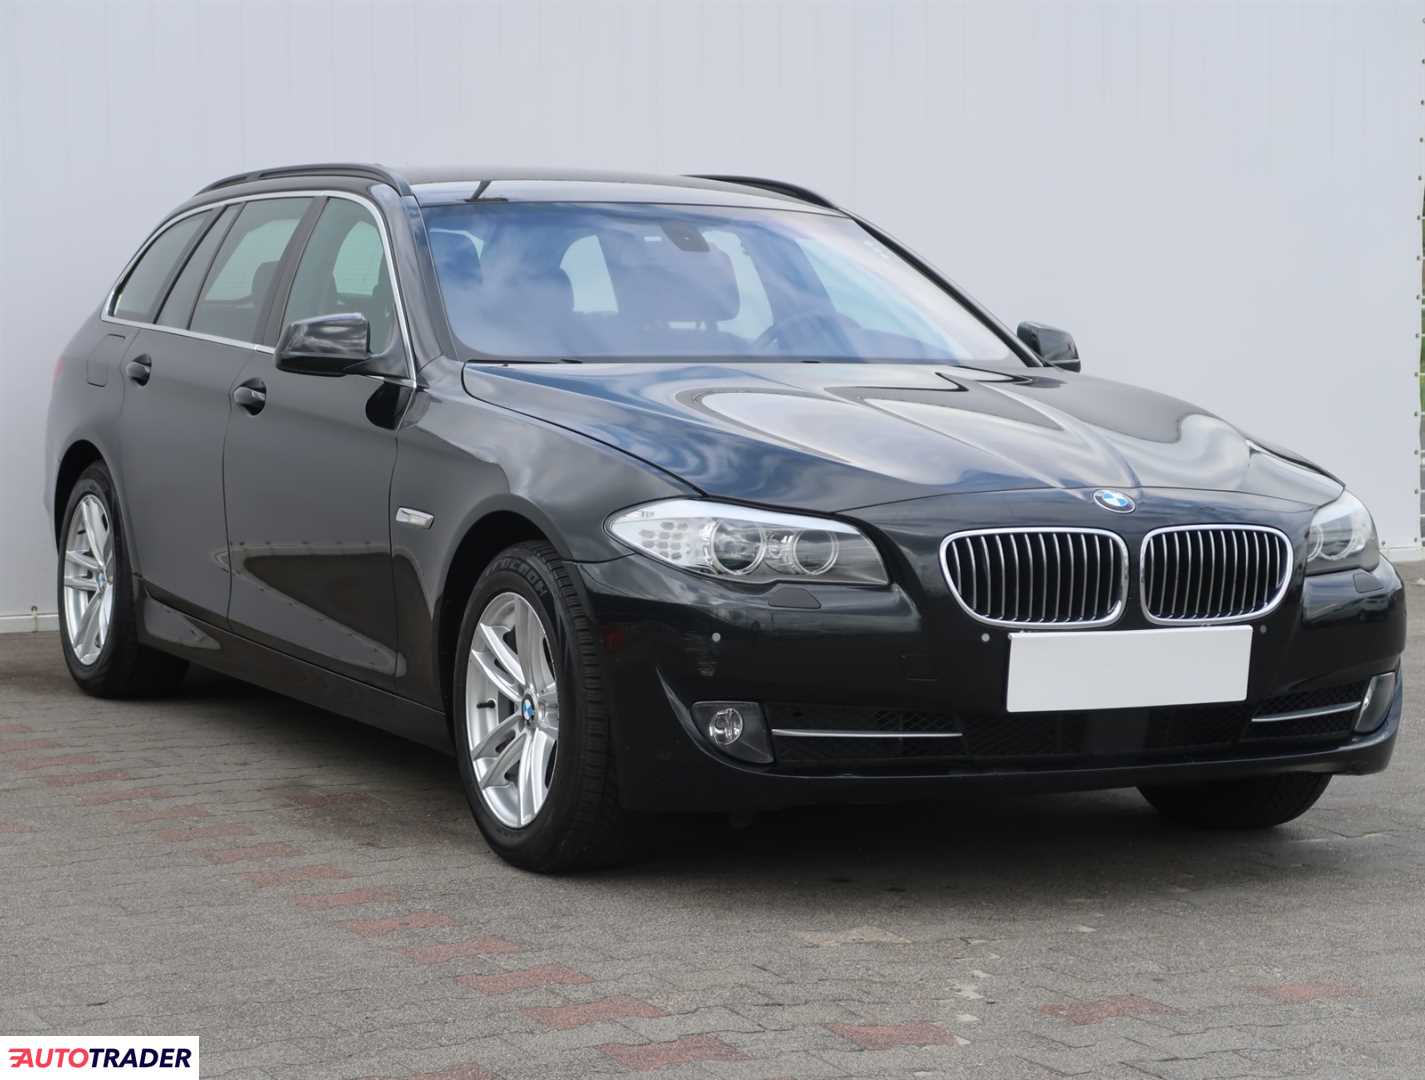 BMW 520 2011 2.0 181 KM